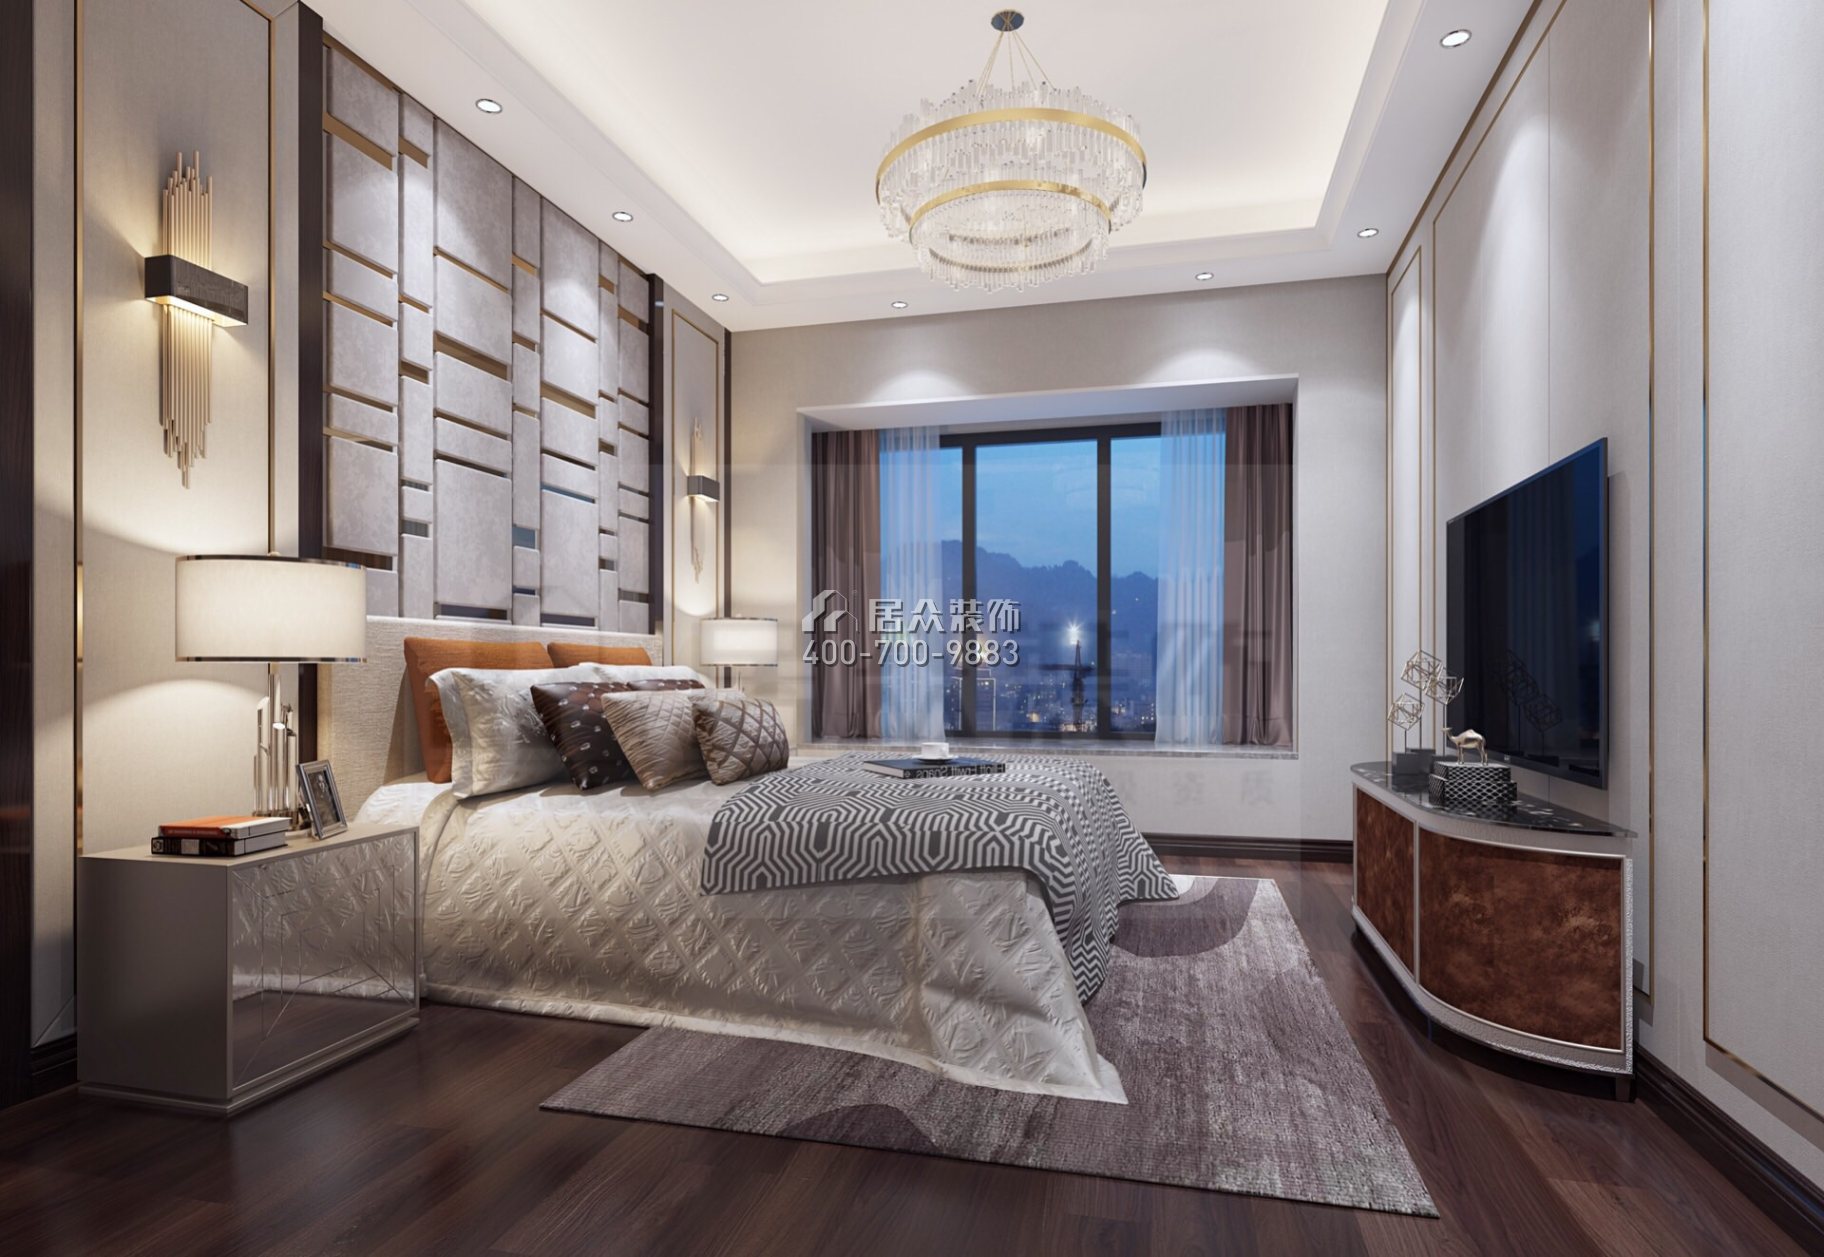 龍光玖龍璽113平方米現代簡約風格平層戶型臥室裝修效果圖